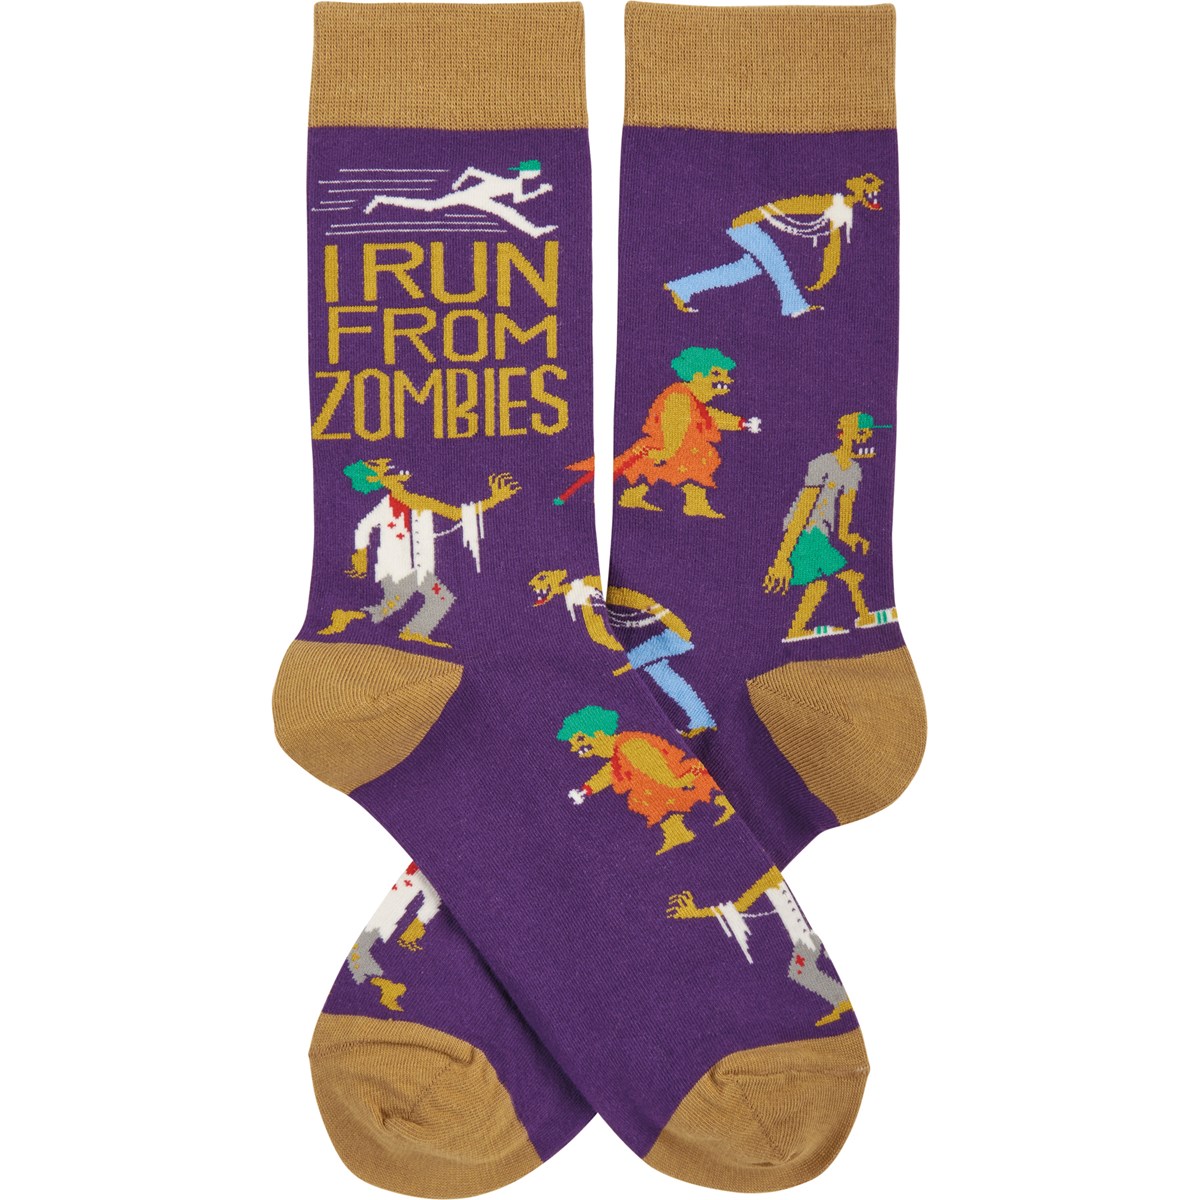 I Run From Zombies Socks - Cotton, Nylon, Spandex